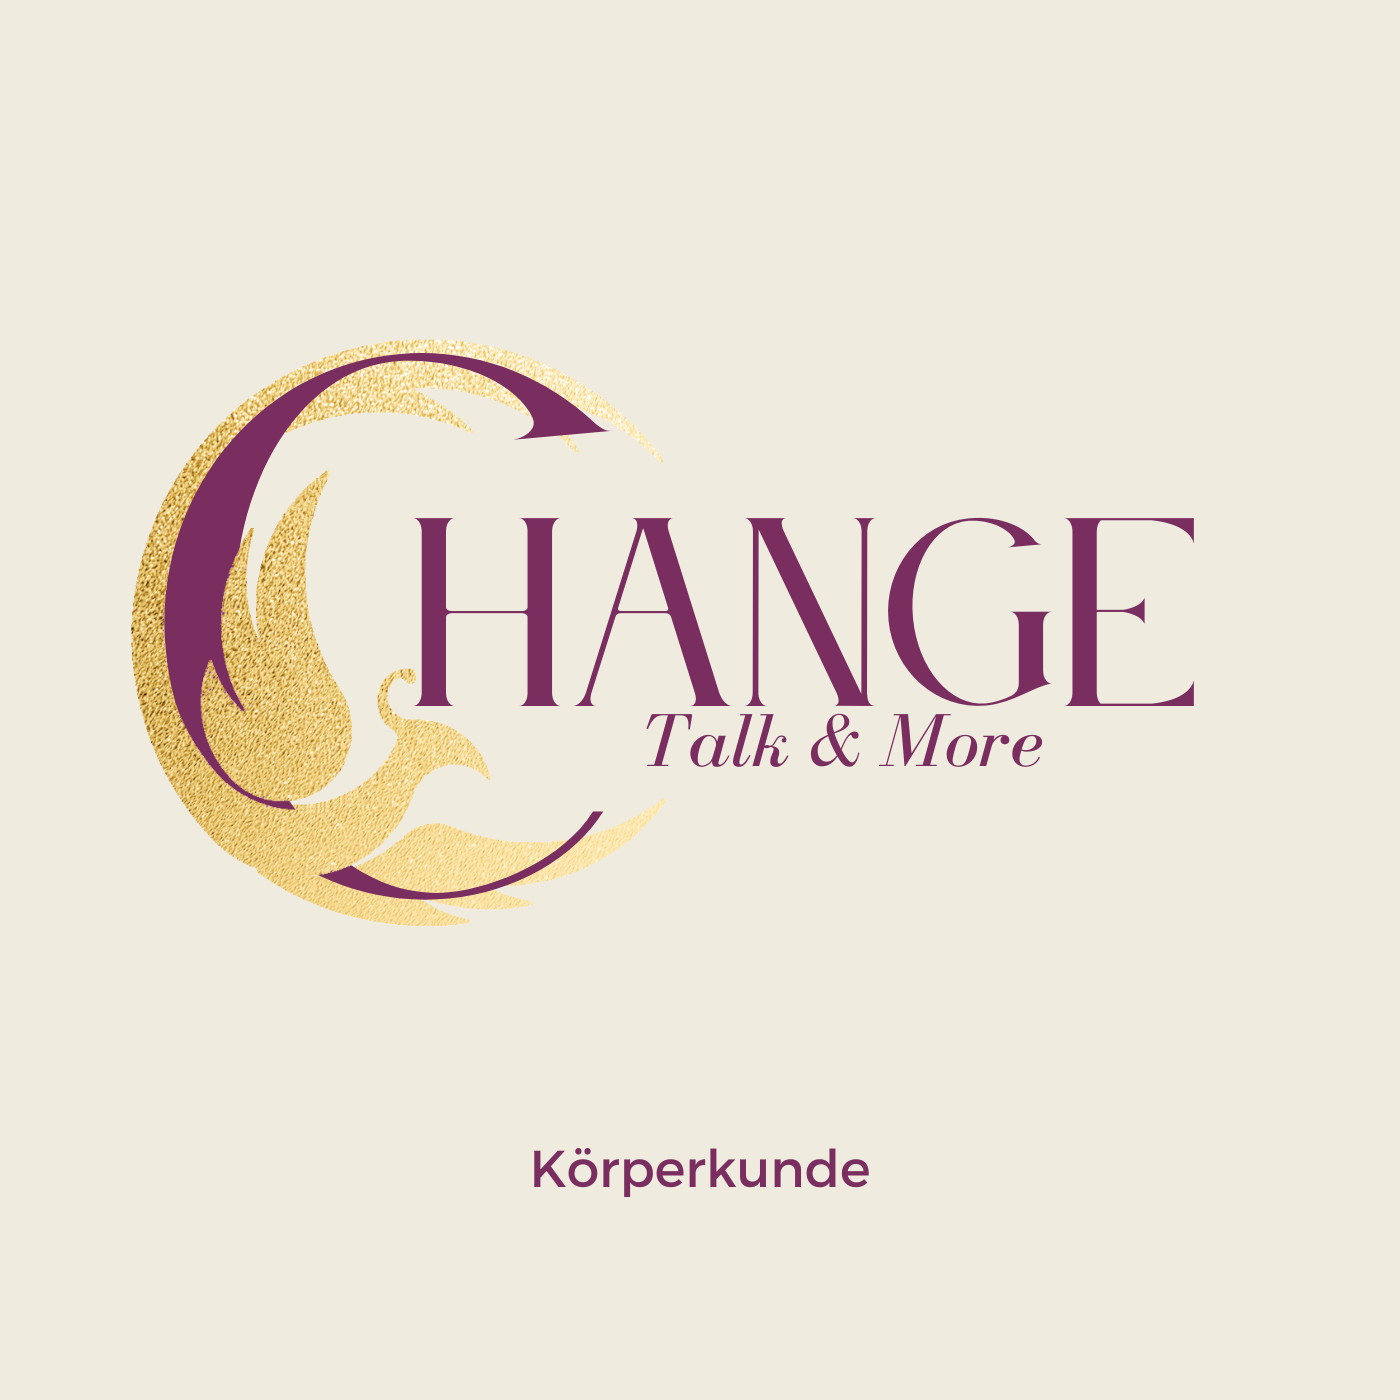 CHANGE - Talk and More (Körperkunde)